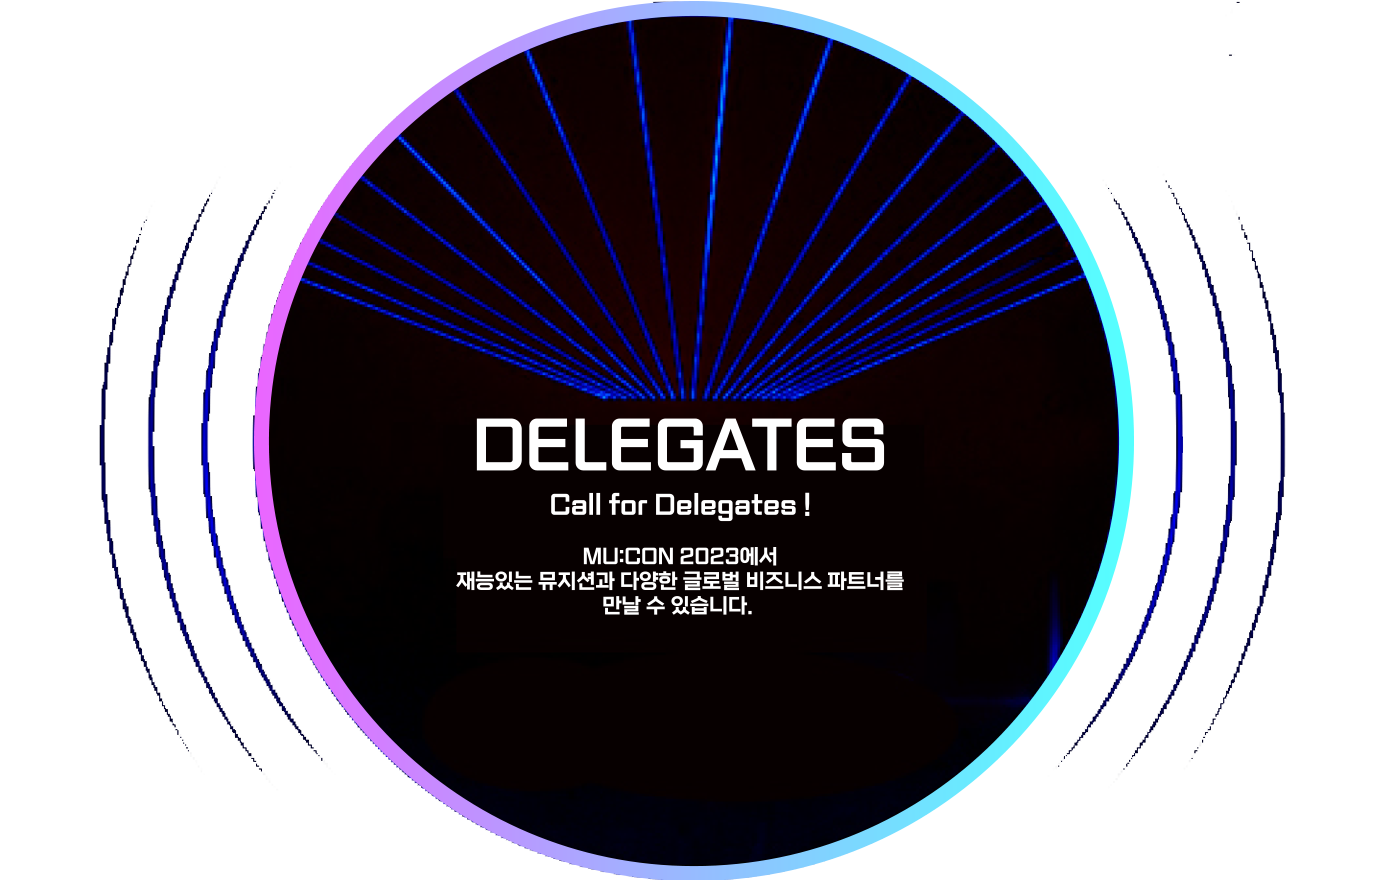 DELEGATES call for Delegates!